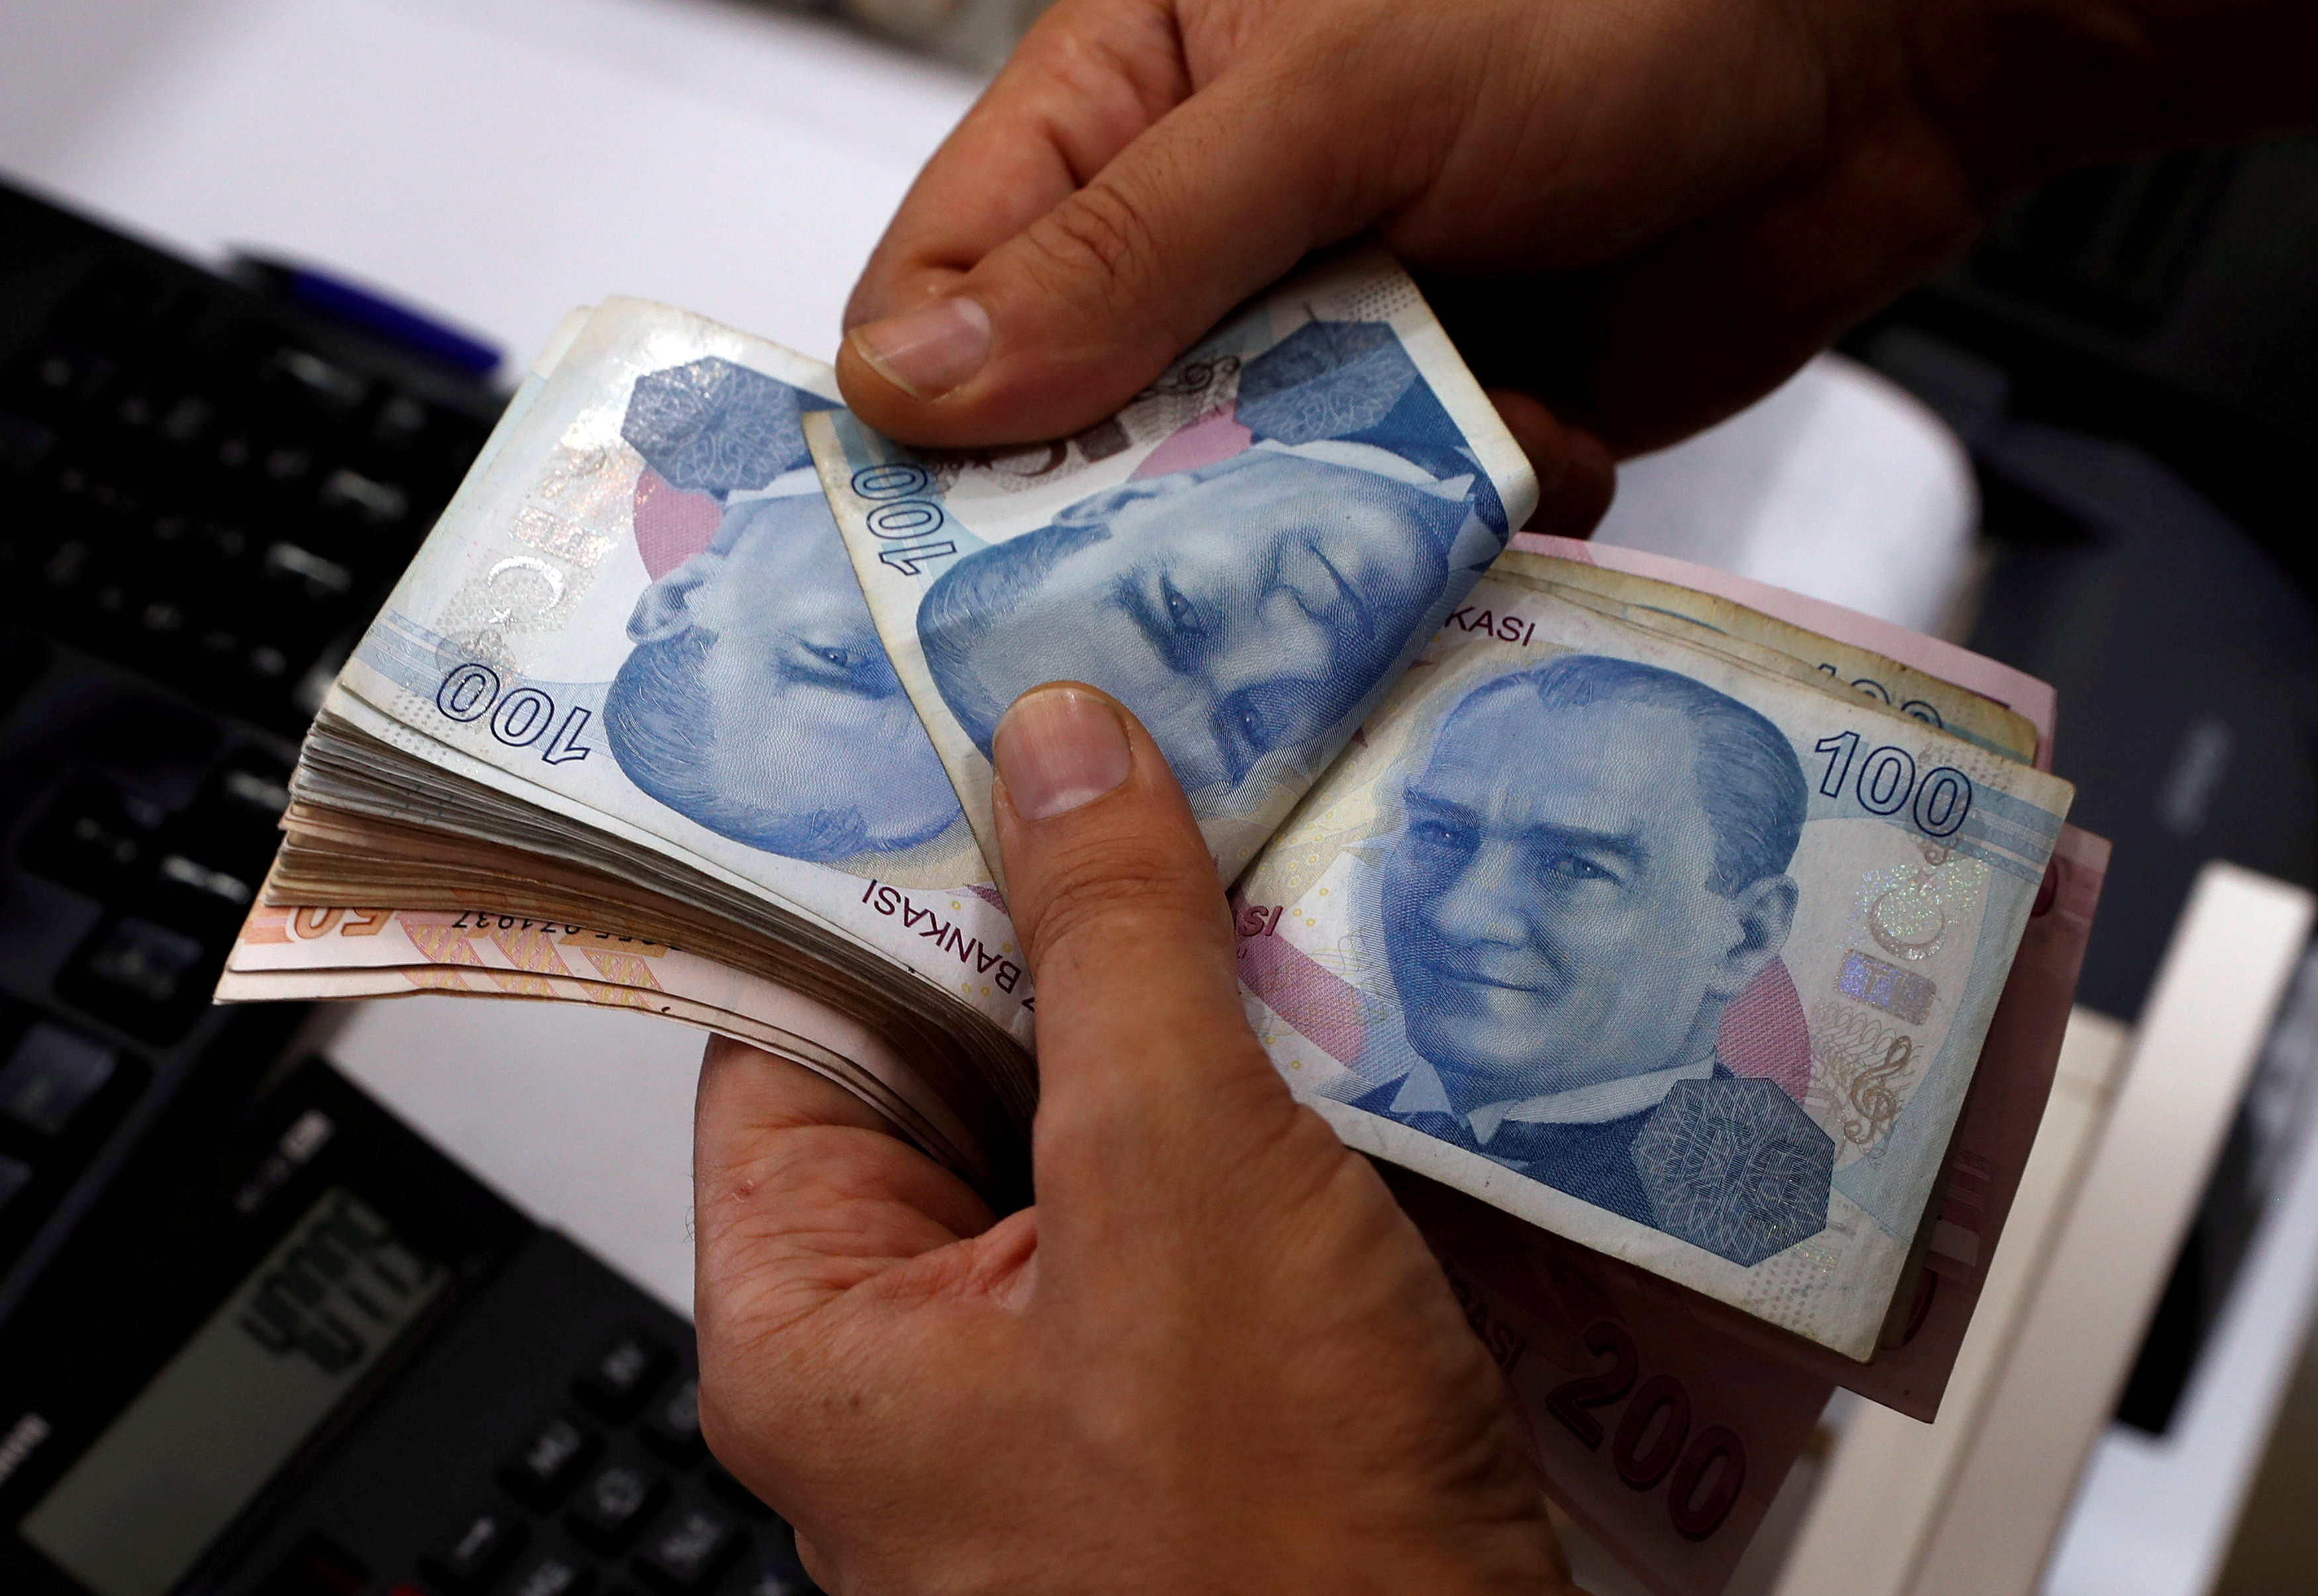 Desplome de la lira turca sacude a las bolsas mundiales y al euro